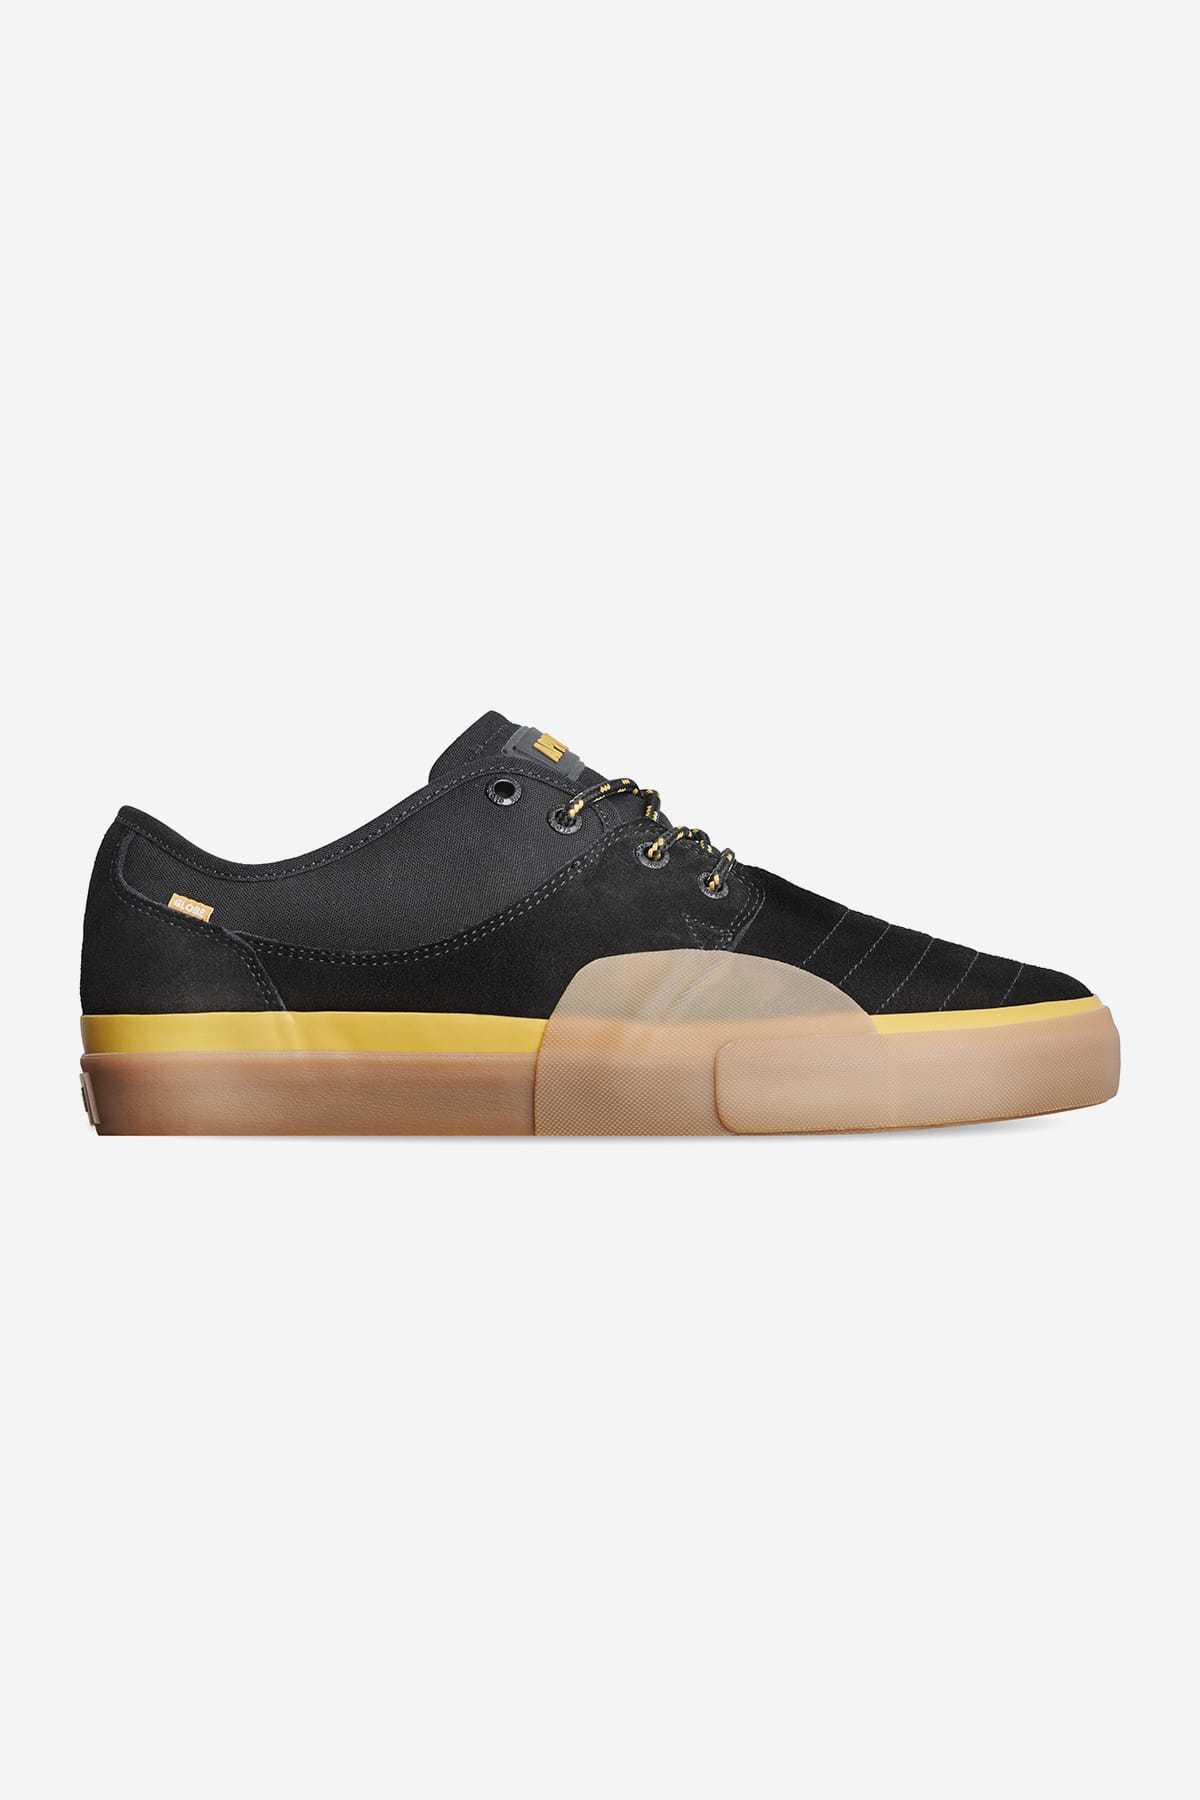 Globe - Mahalo Plus - Schwarz/Mustard - skateboard Schuhe